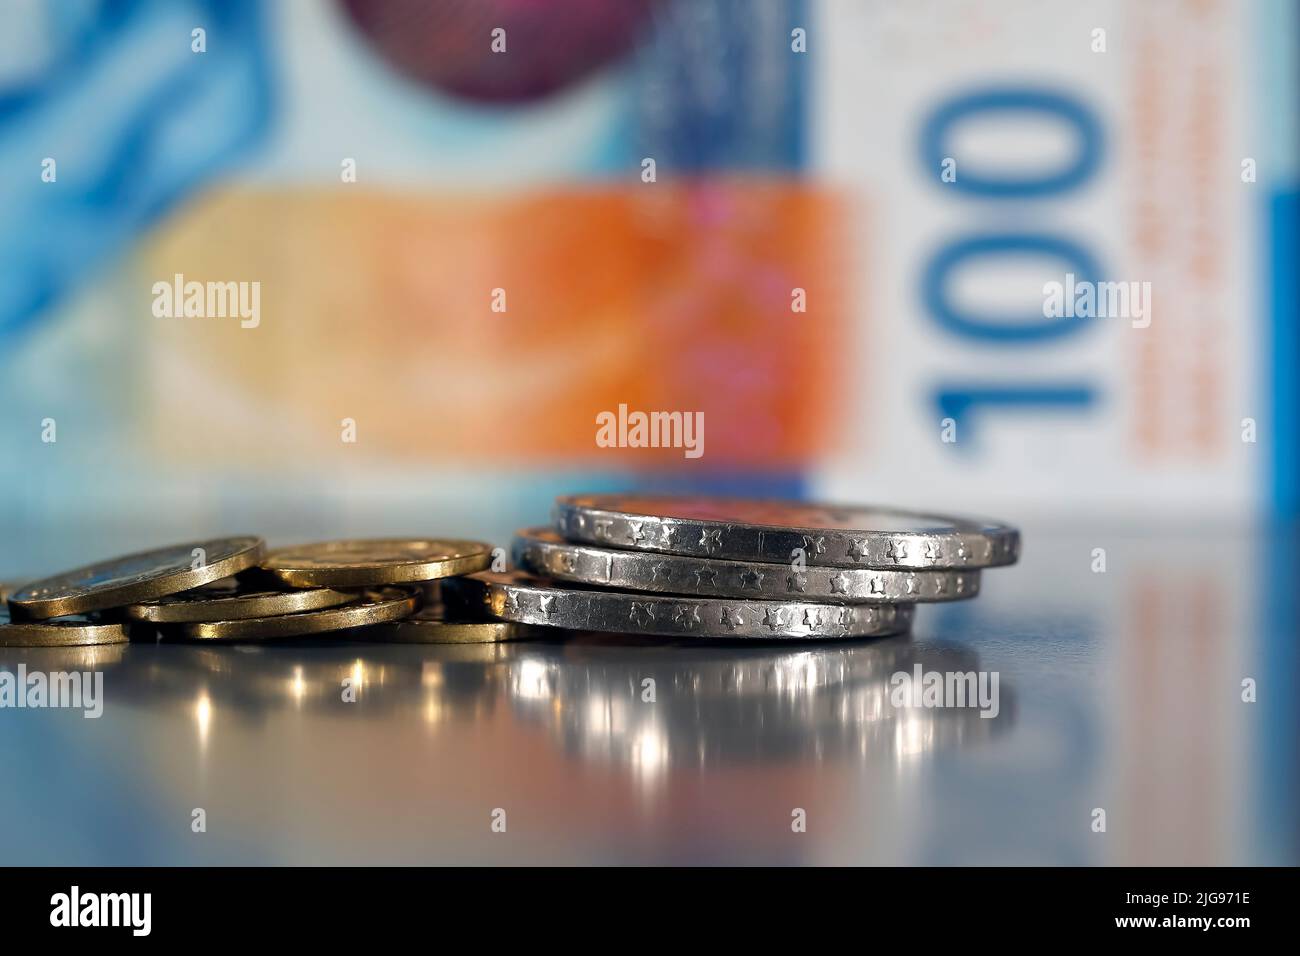 Esta pequeña pila de varias monedas se ha colocado sobre una superficie gris plana y es visible sobre el fondo de la nota borrosa de 100 francos suizos. Foto de stock